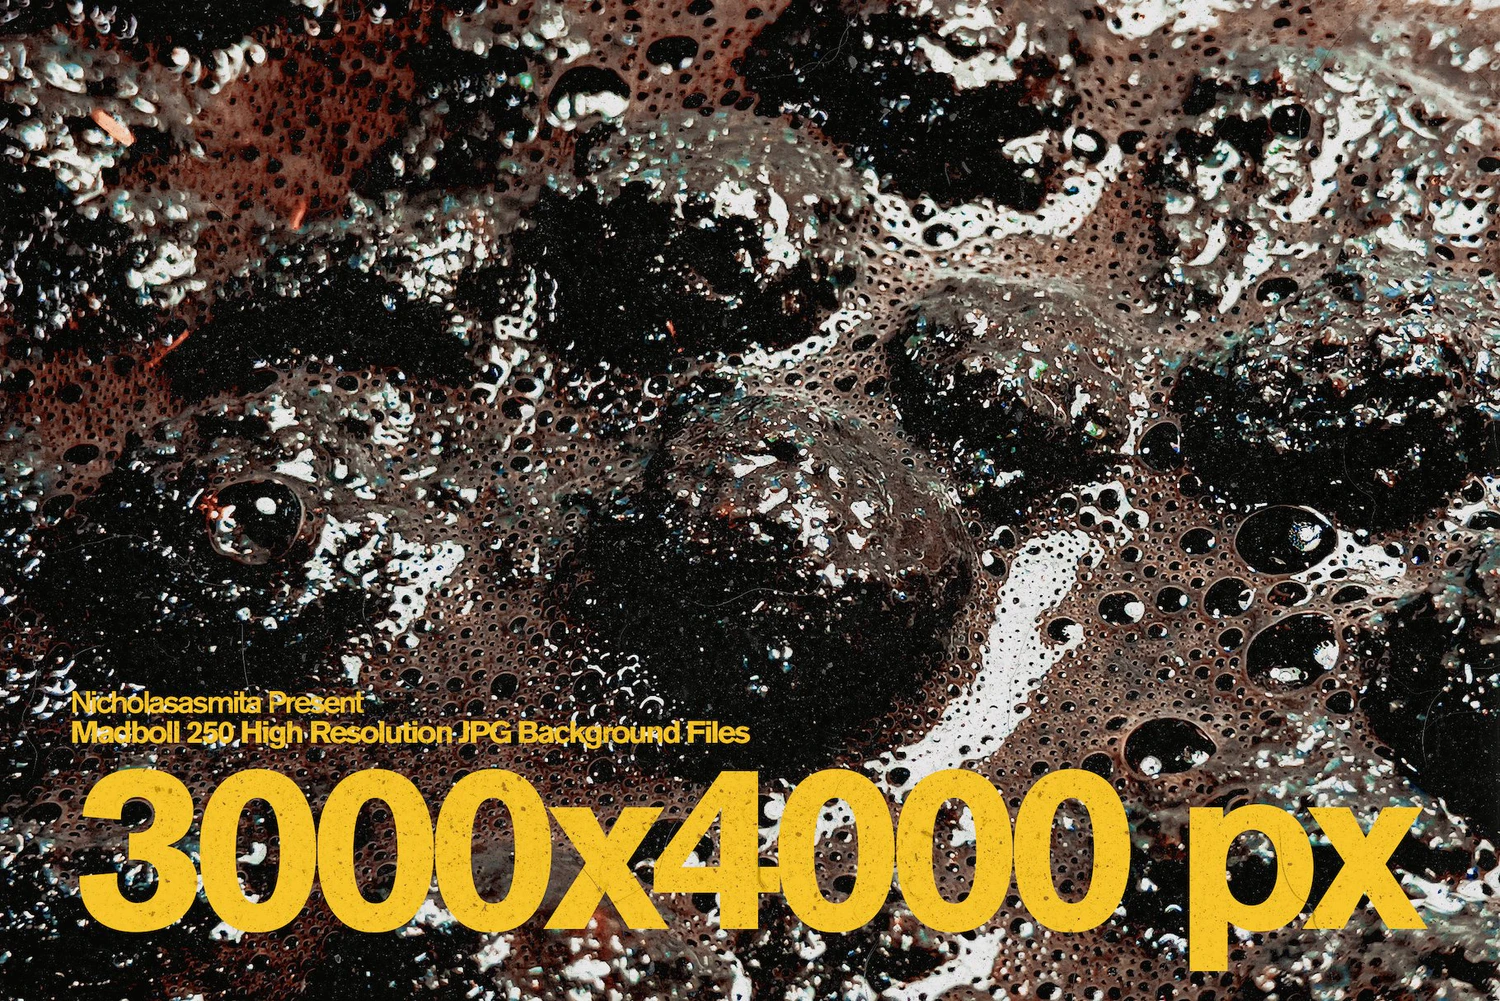 2521 250款真实高质量脏泥浆气泡化学液体天然纹理背景设计包Madboll 250 High Res JPG background